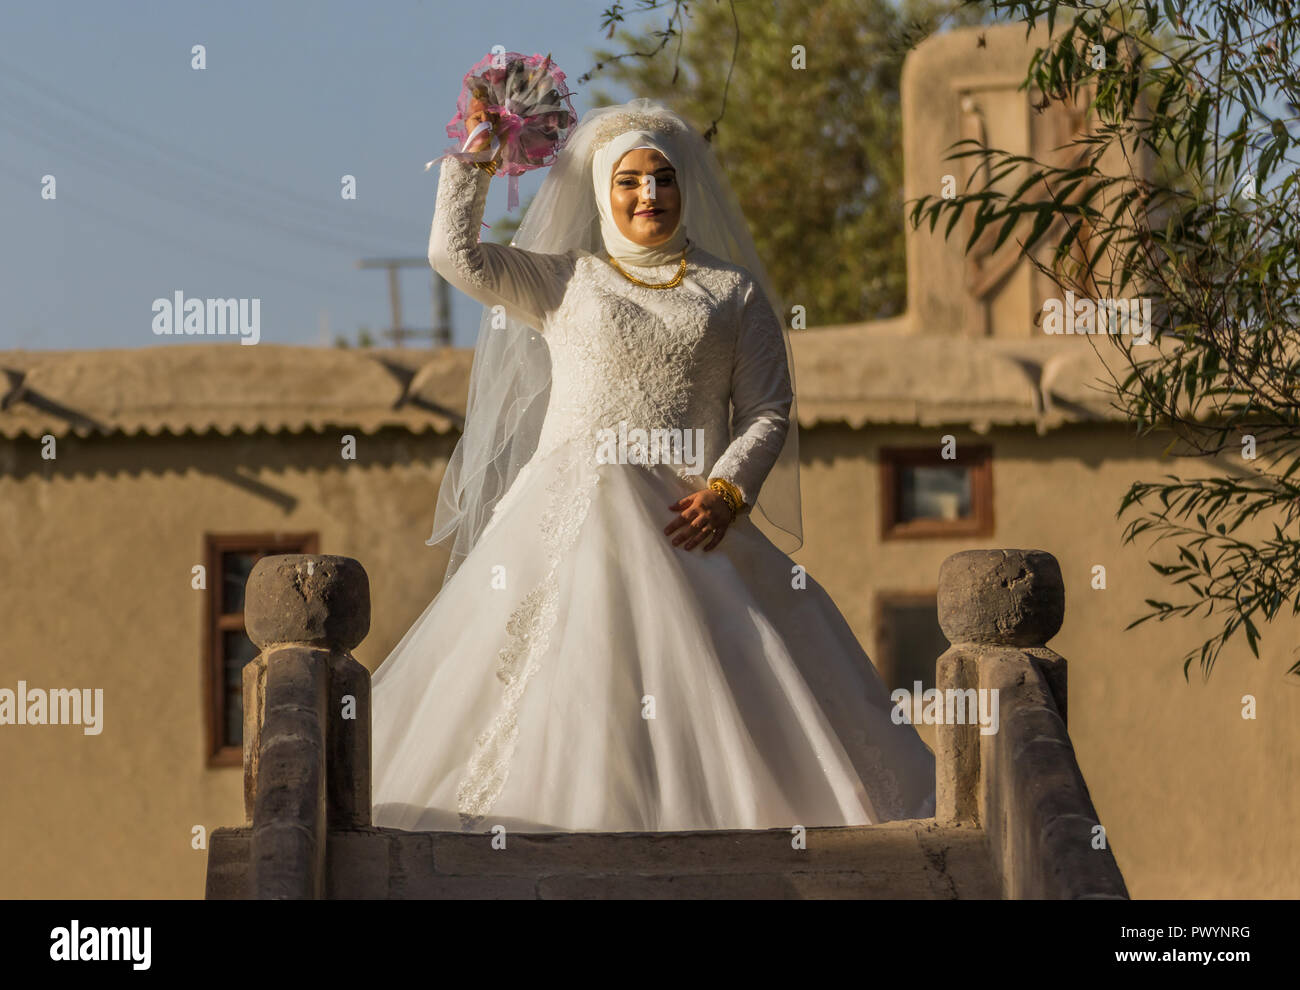 Sposa iran immagini e fotografie stock ad alta risoluzione - Alamy